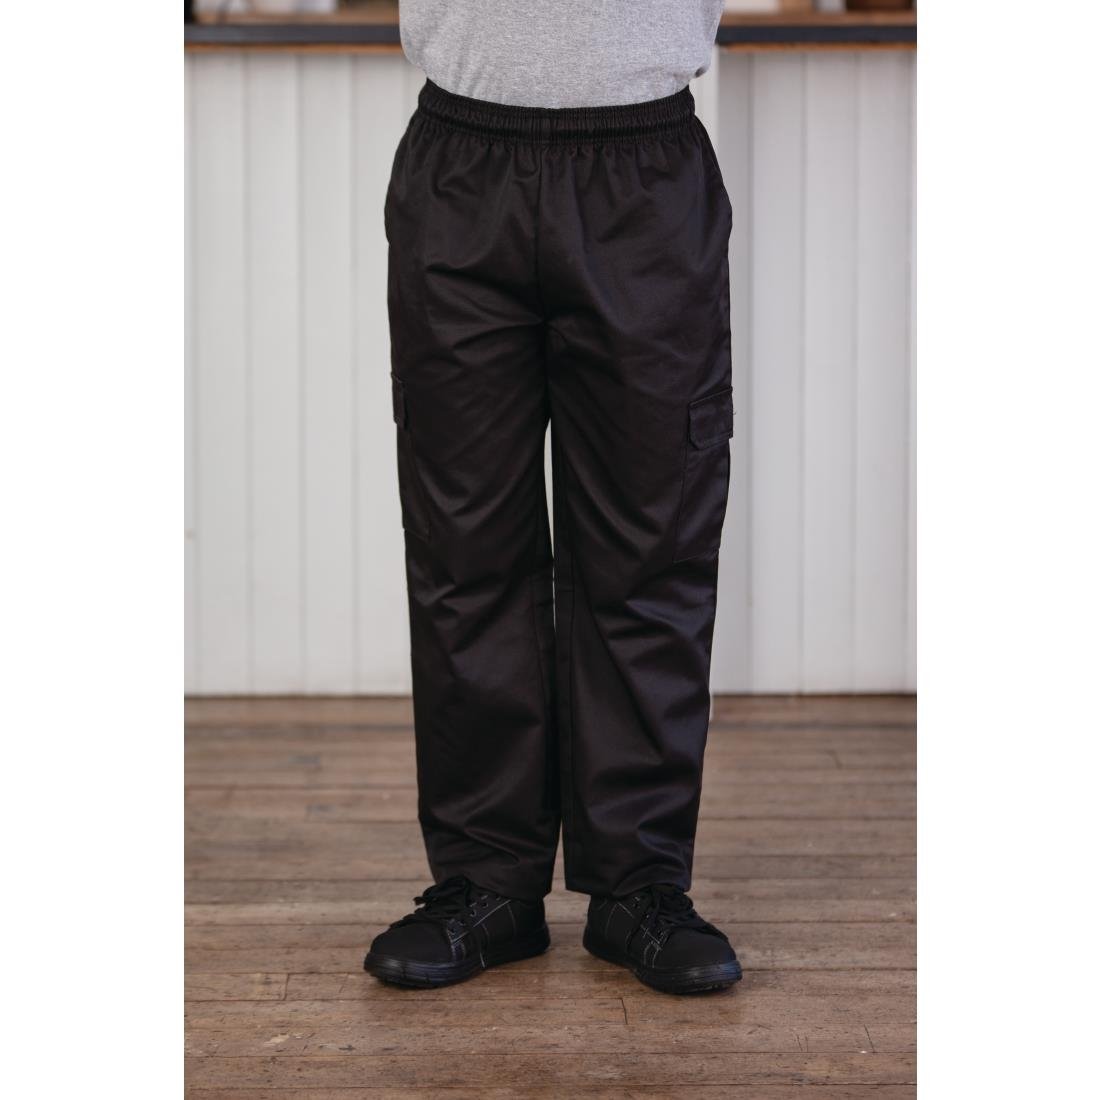 Pantalon cargo Whites noir XL